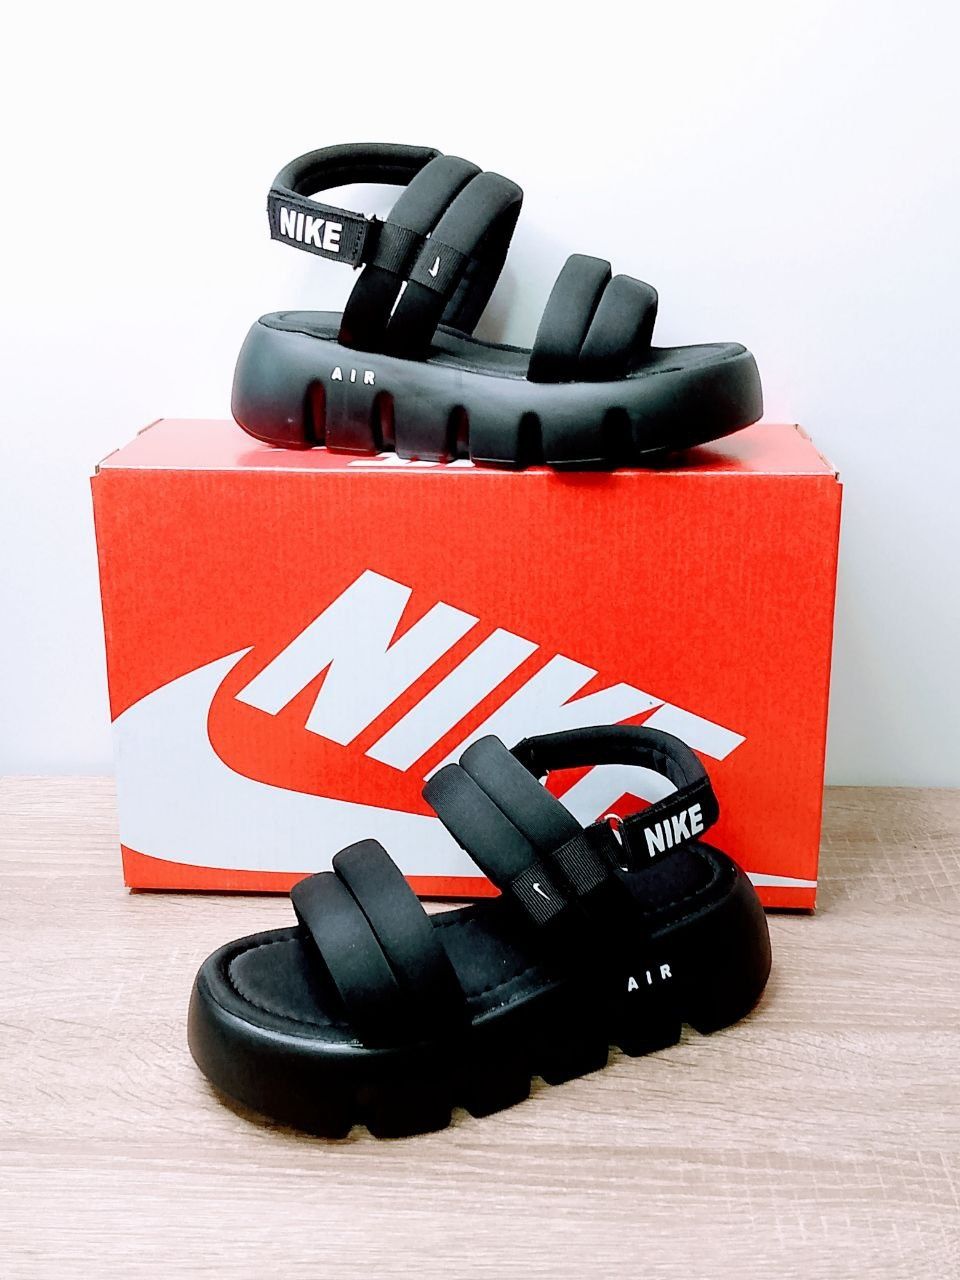 Женские босоножки Nike сандалии чёрные Найк 36-41